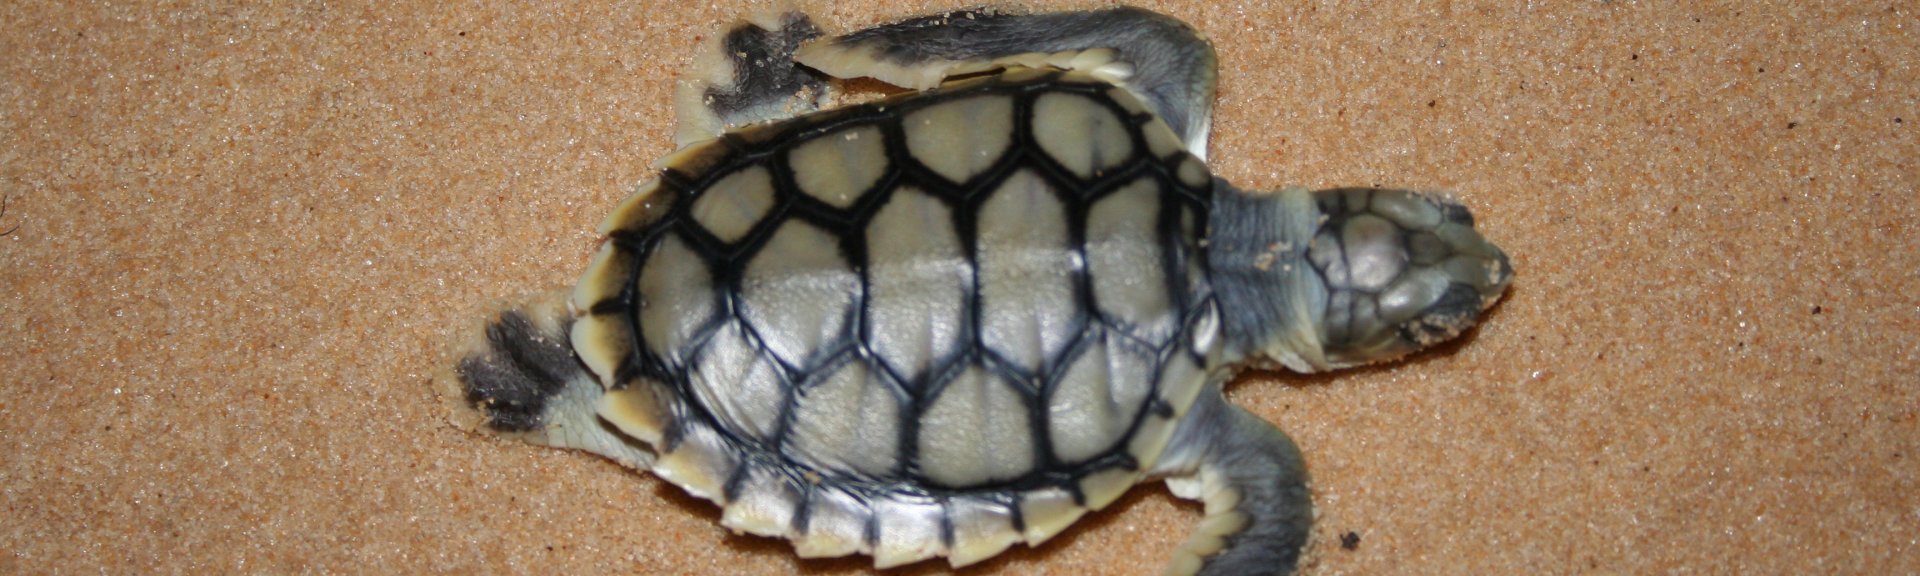 Flatback turtle